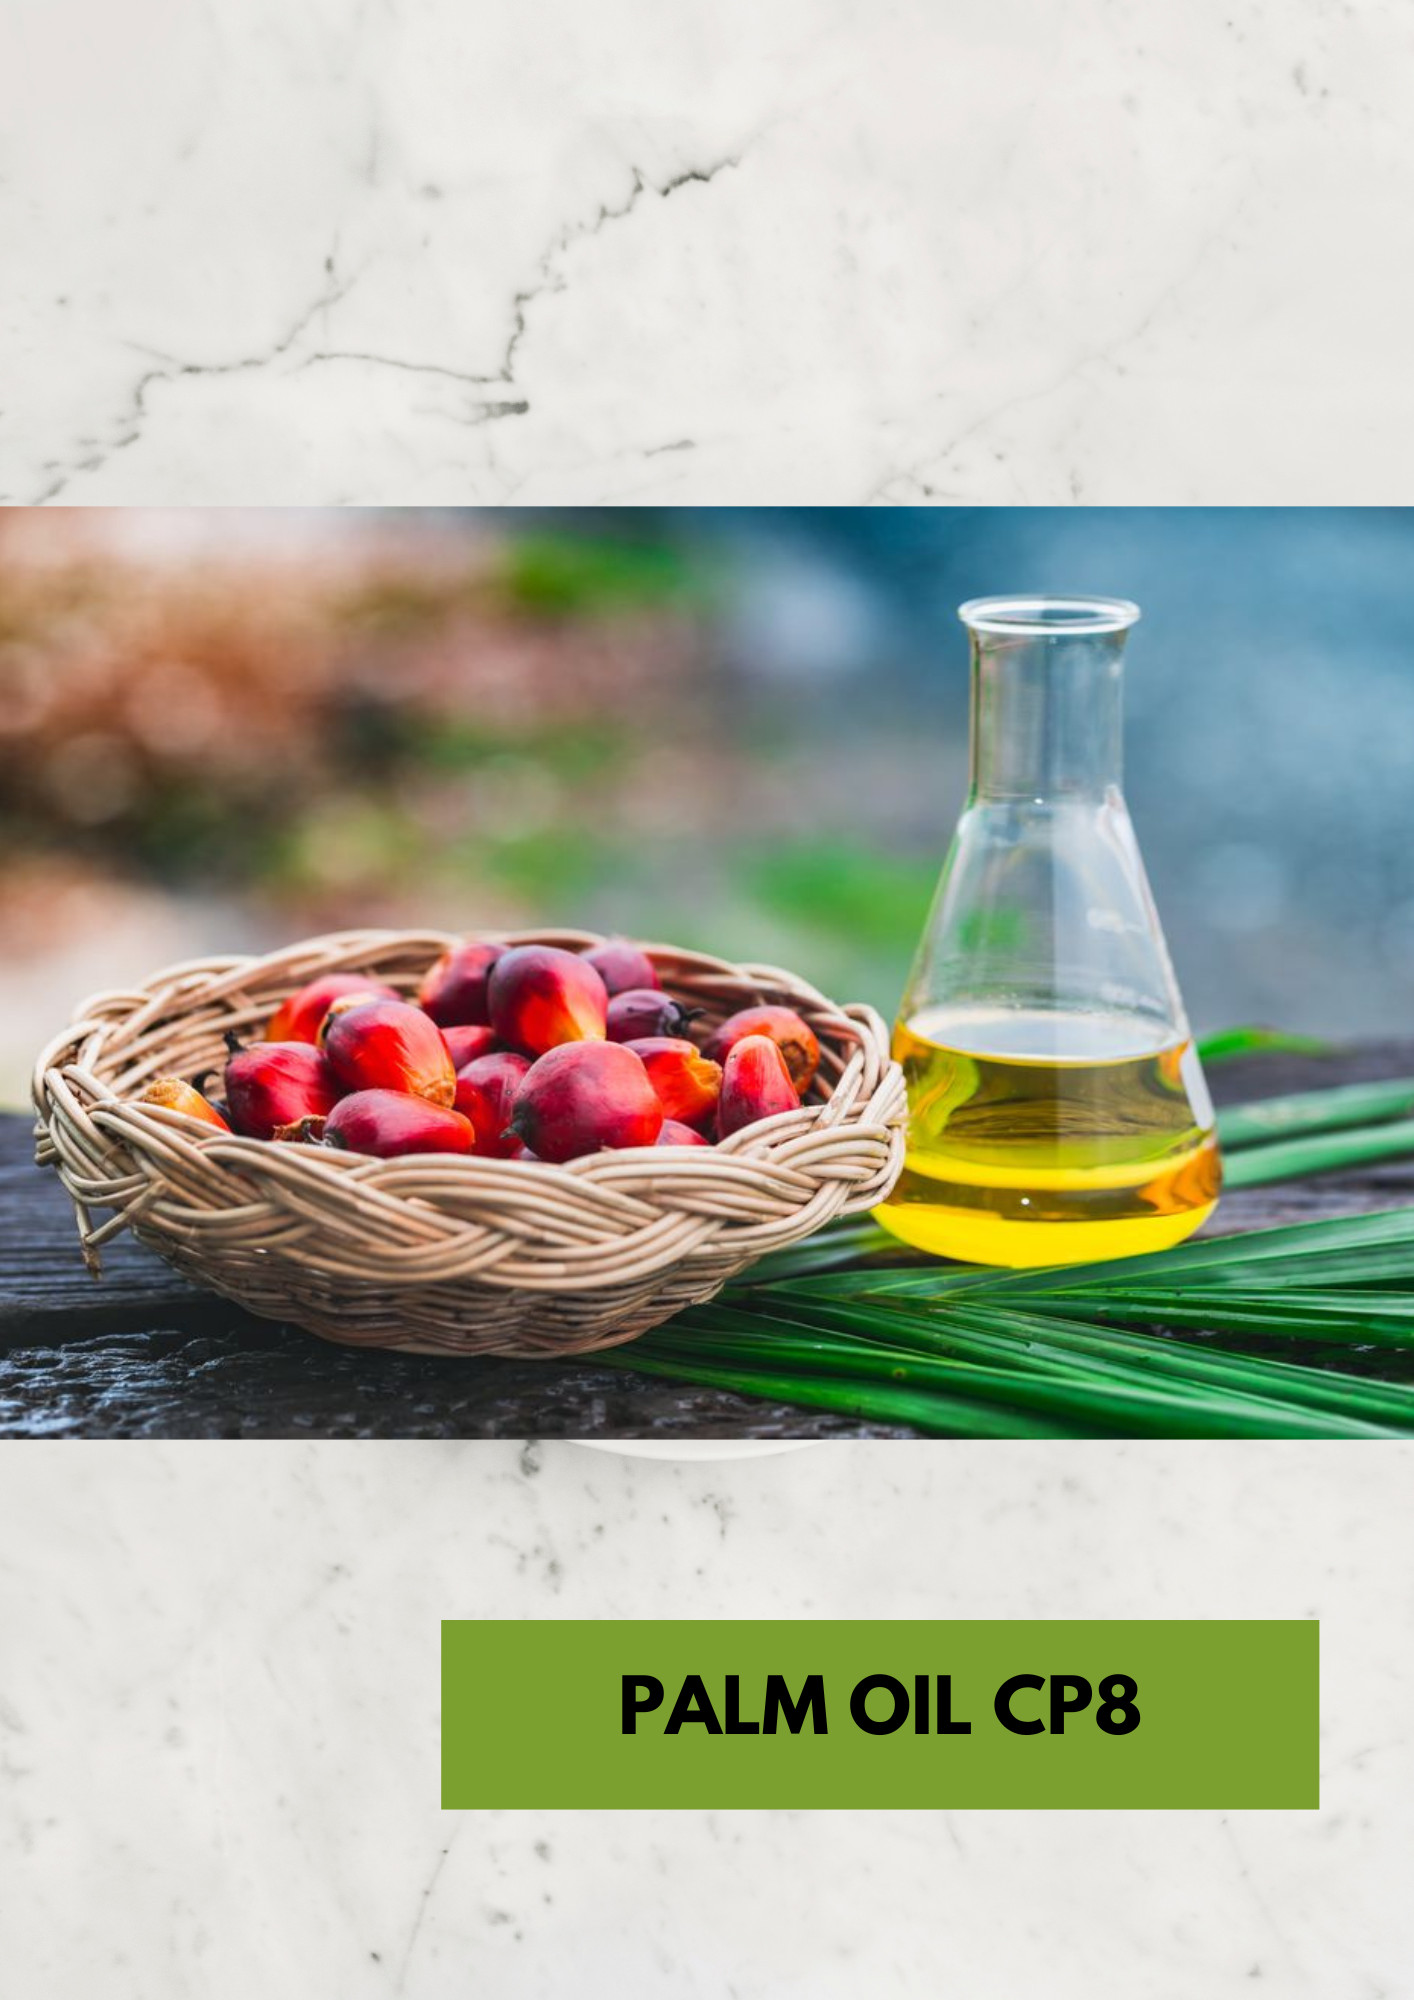 Palm oil CP8 origin